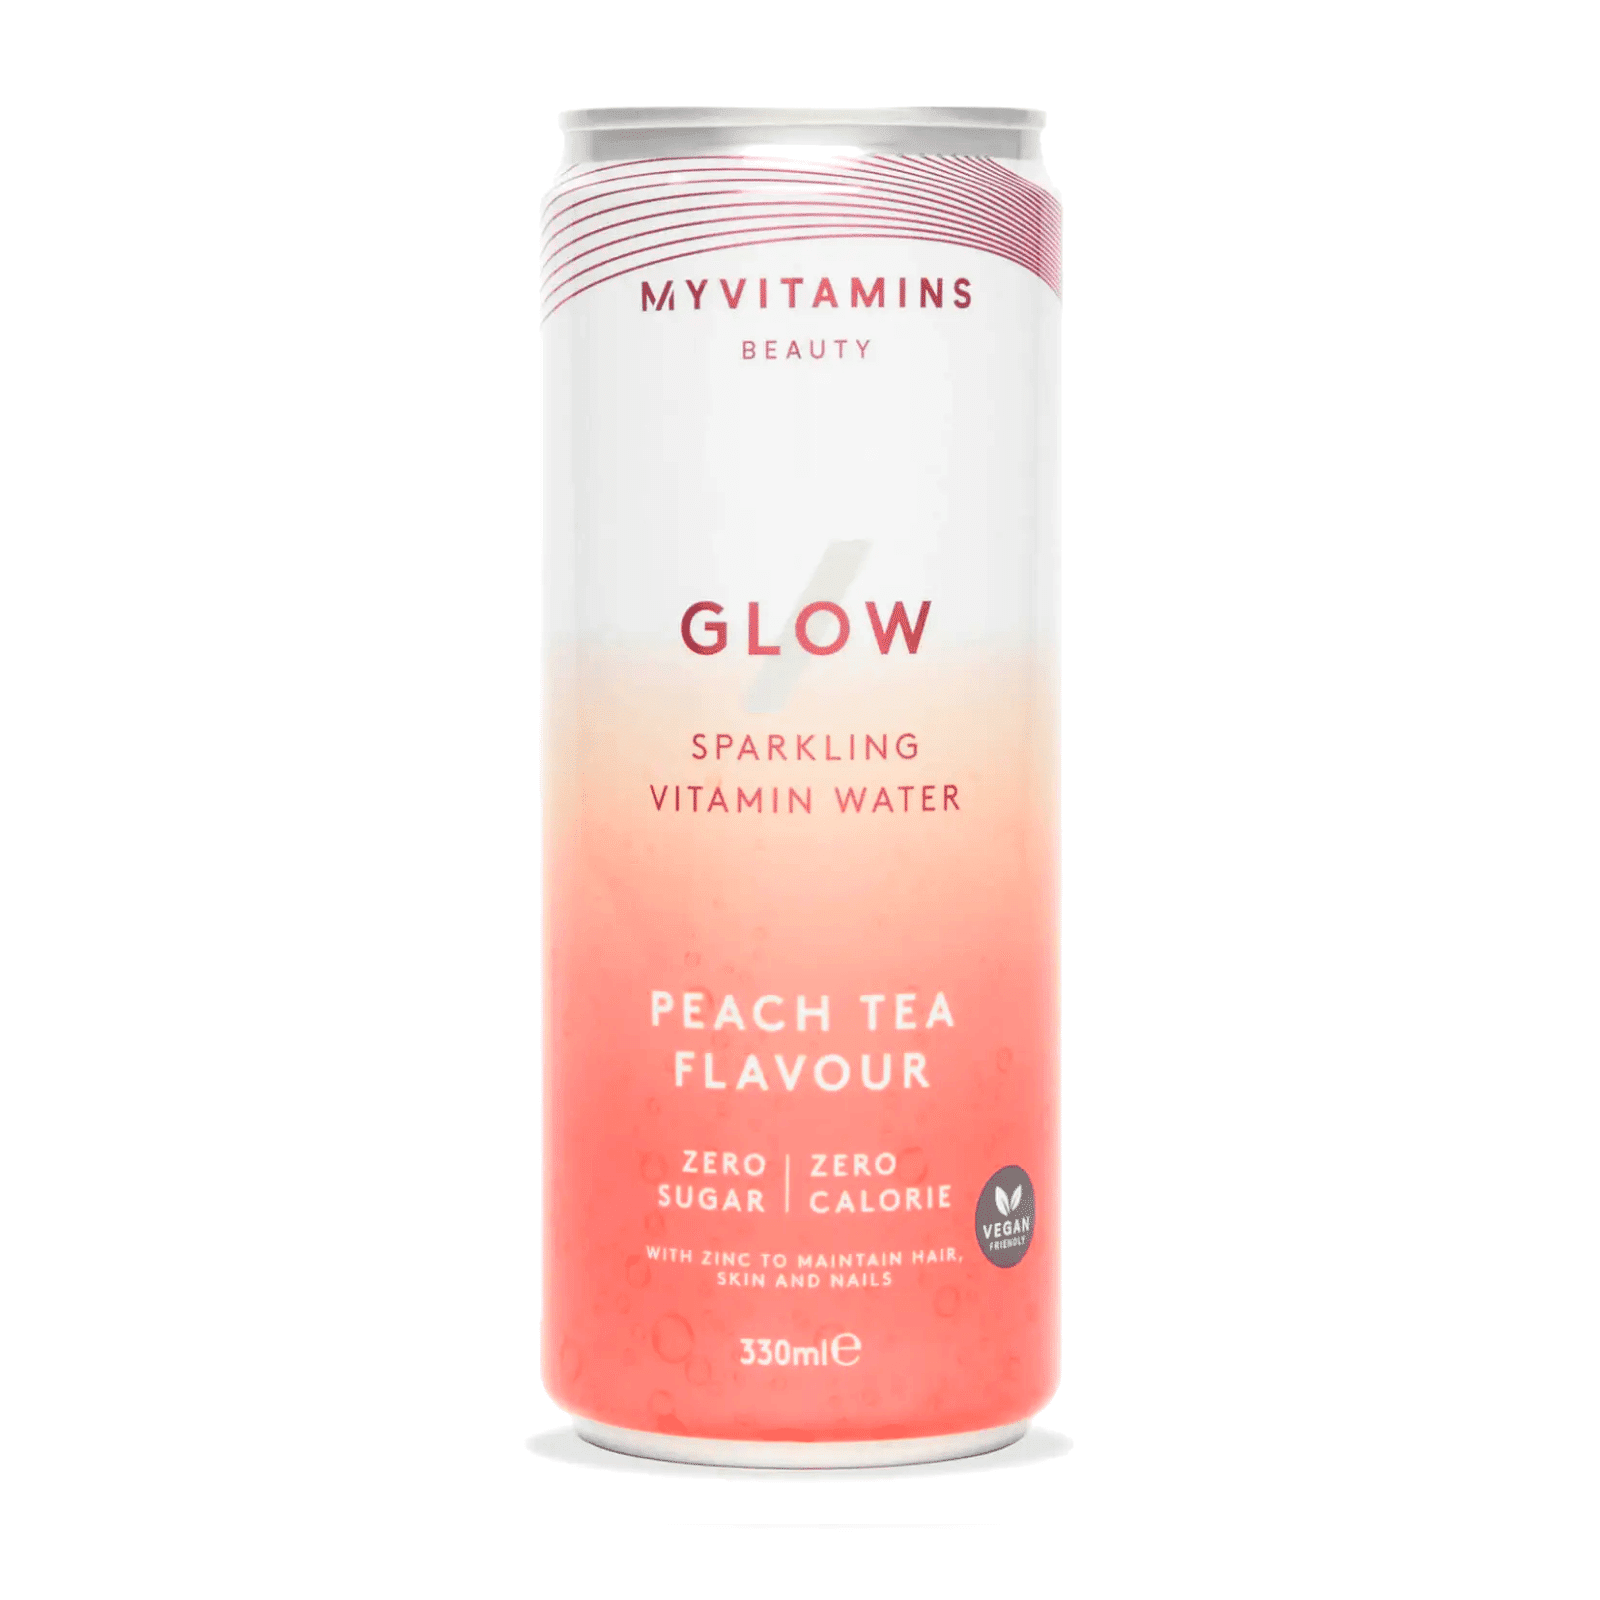 Myvitamins Glow Sparkling Vitamin Water (Sample) - Peach